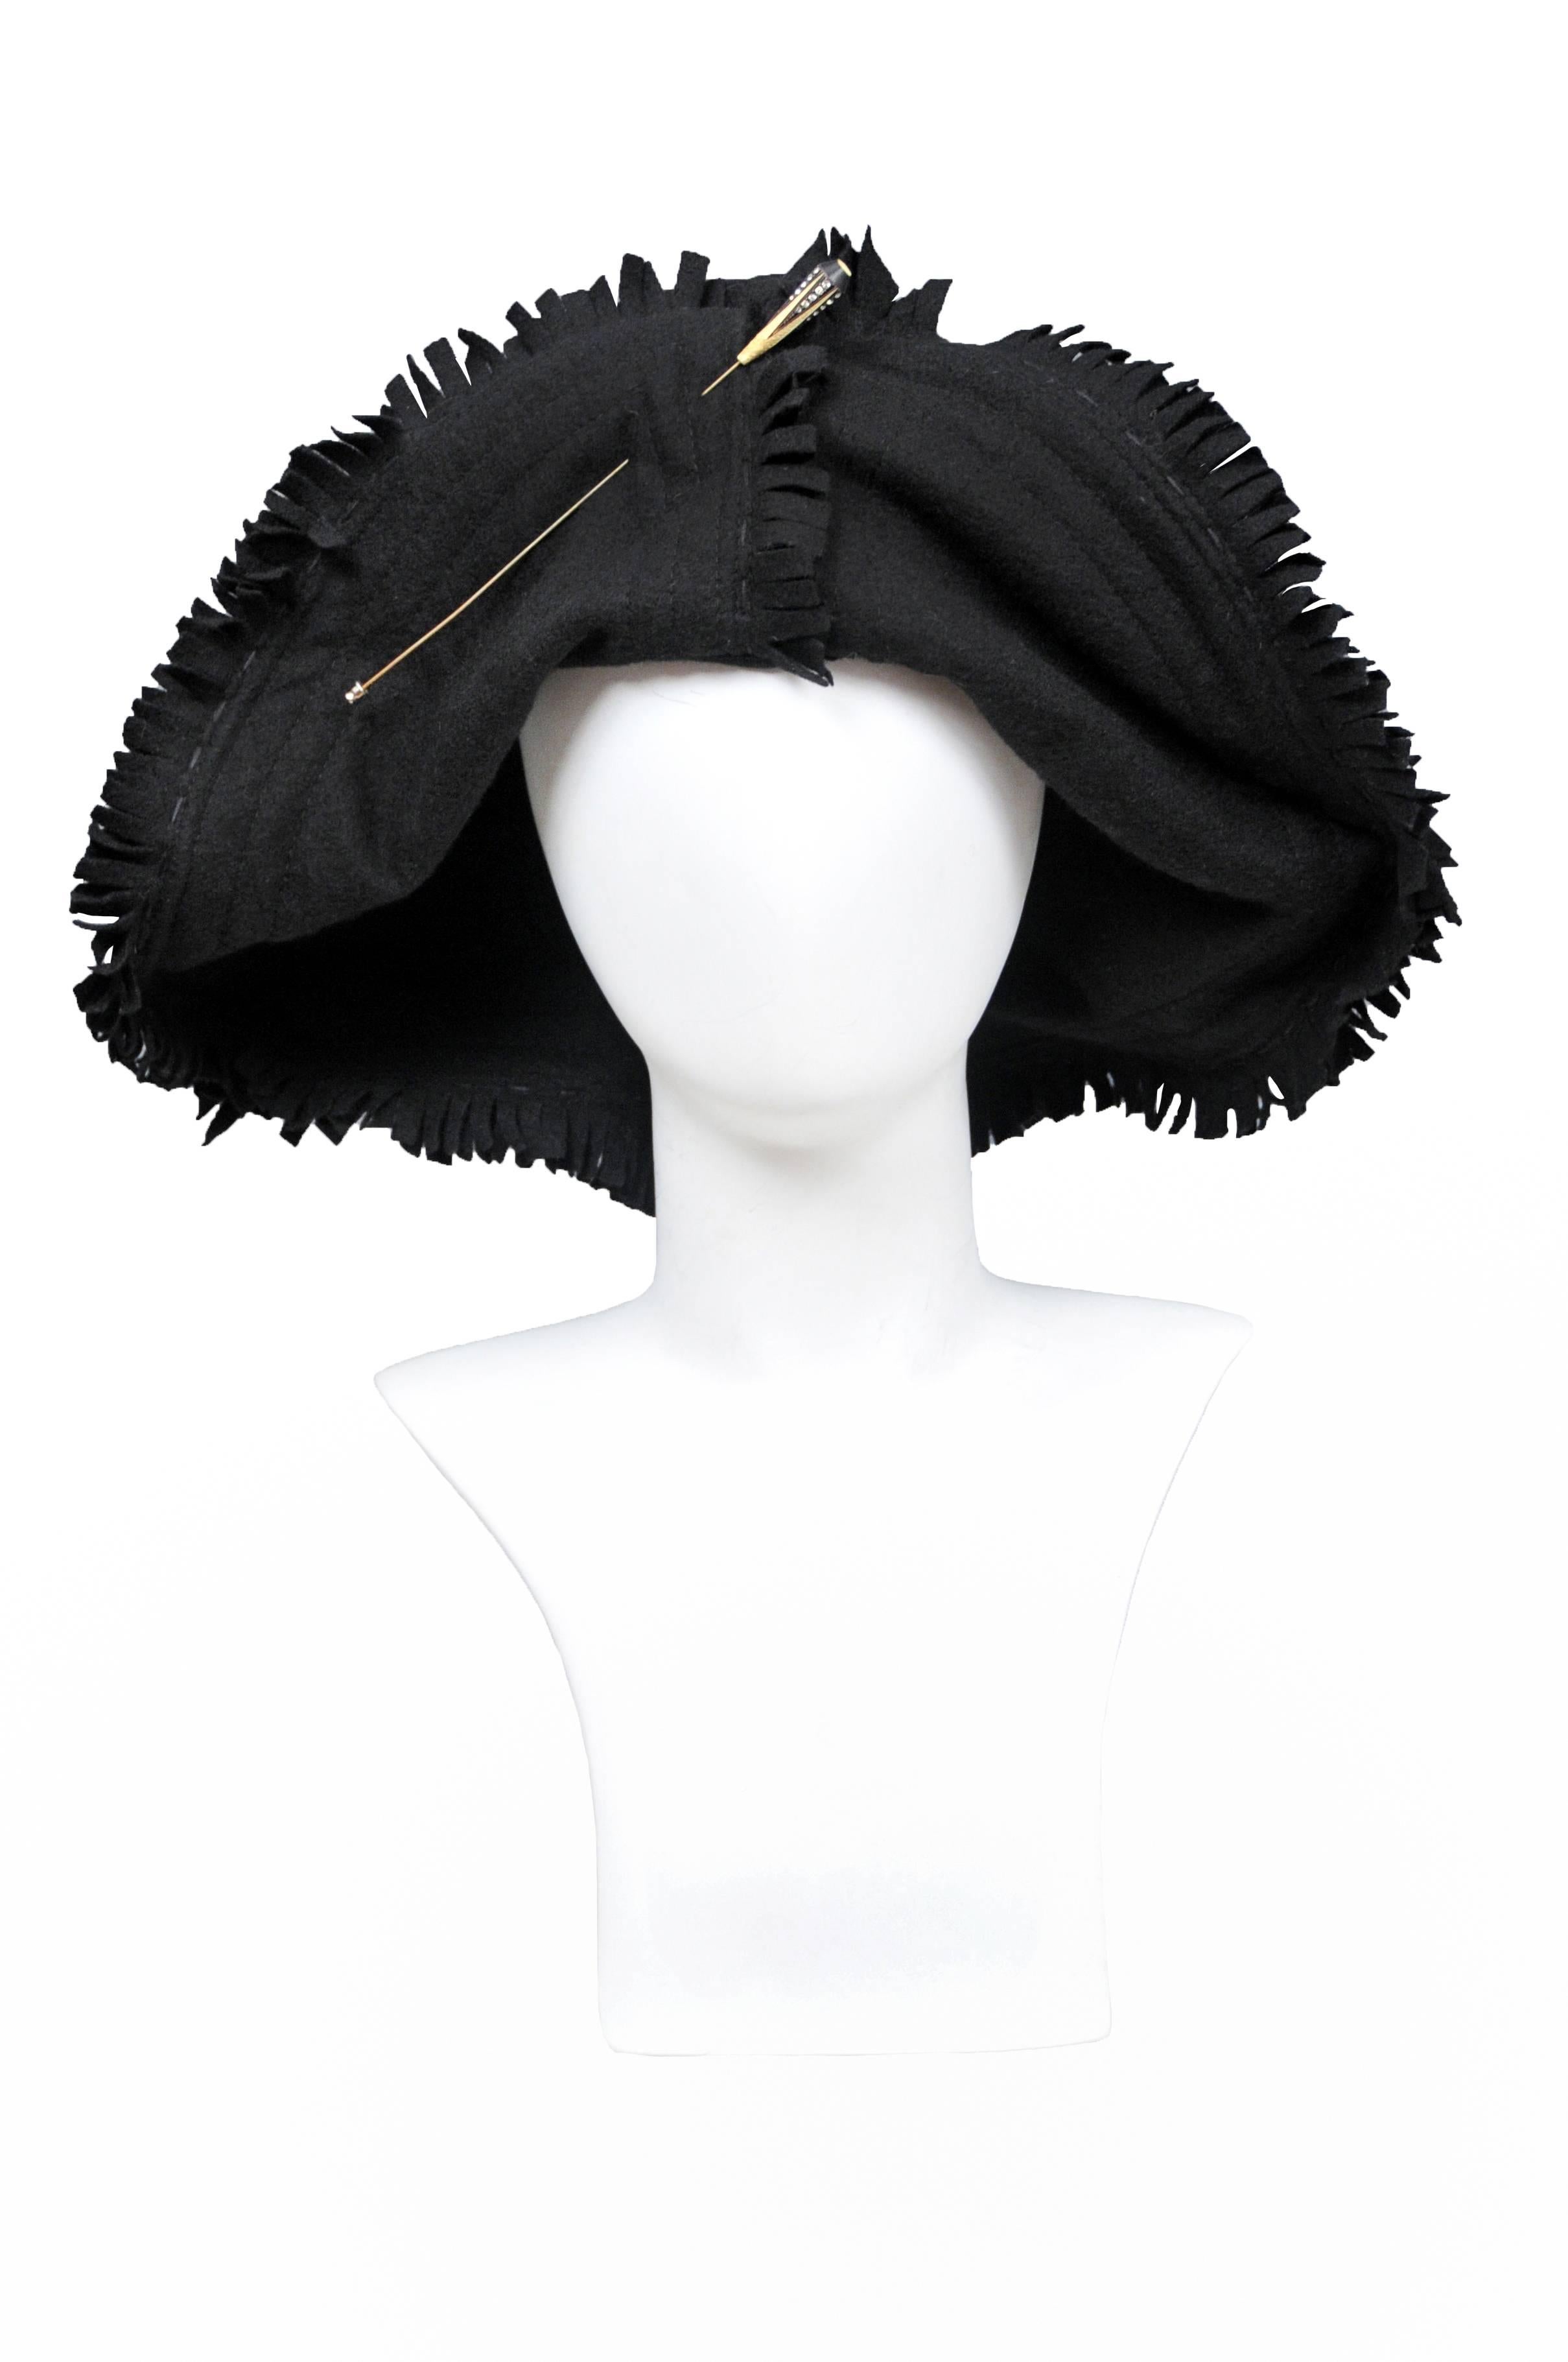 Schwarze Wollmütze im Vintage-Stil von Junya Watanabe mit absichtlich ausgefransten Rändern und einer Vintage-Hutnadel in der vorderen Mitte.
Bitte fragen Sie nach weiteren Bildern.